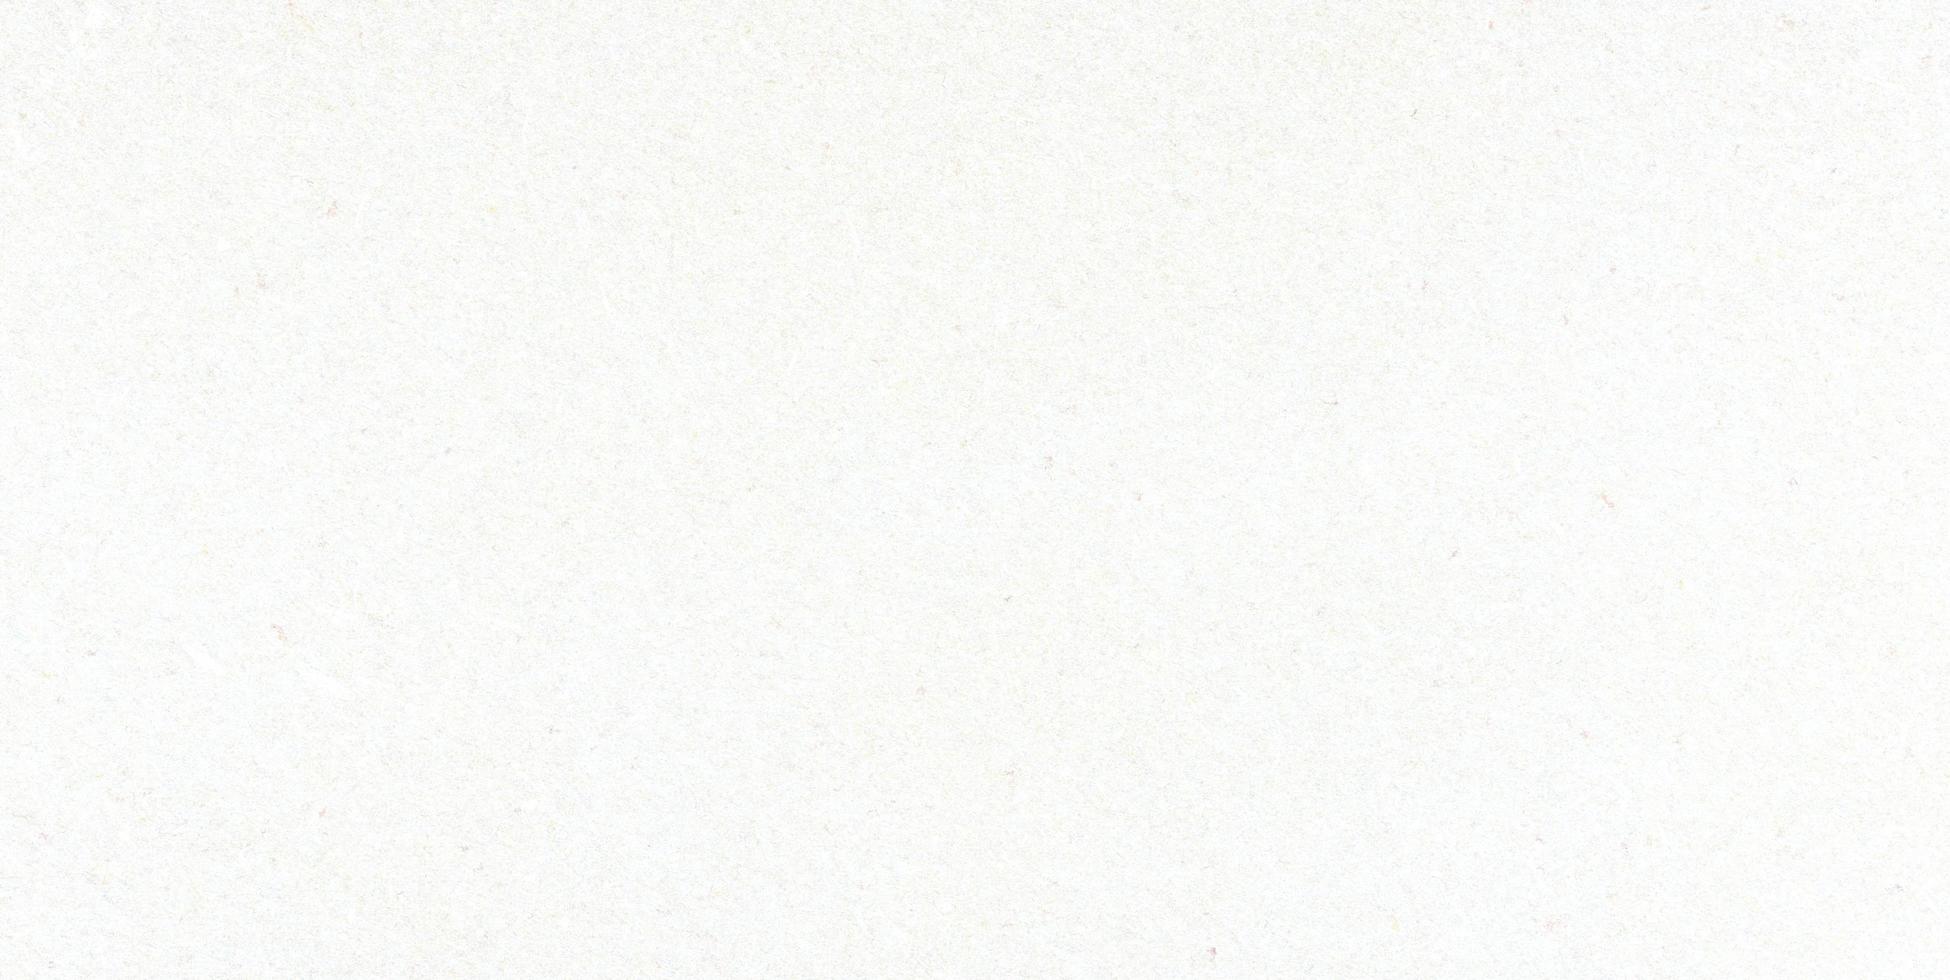 Weißer Papiertexturhintergrund, Kraftpapier horizontal mit einzigartigem Design, weicher Naturpapierstil für ästhetisches kreatives Design foto